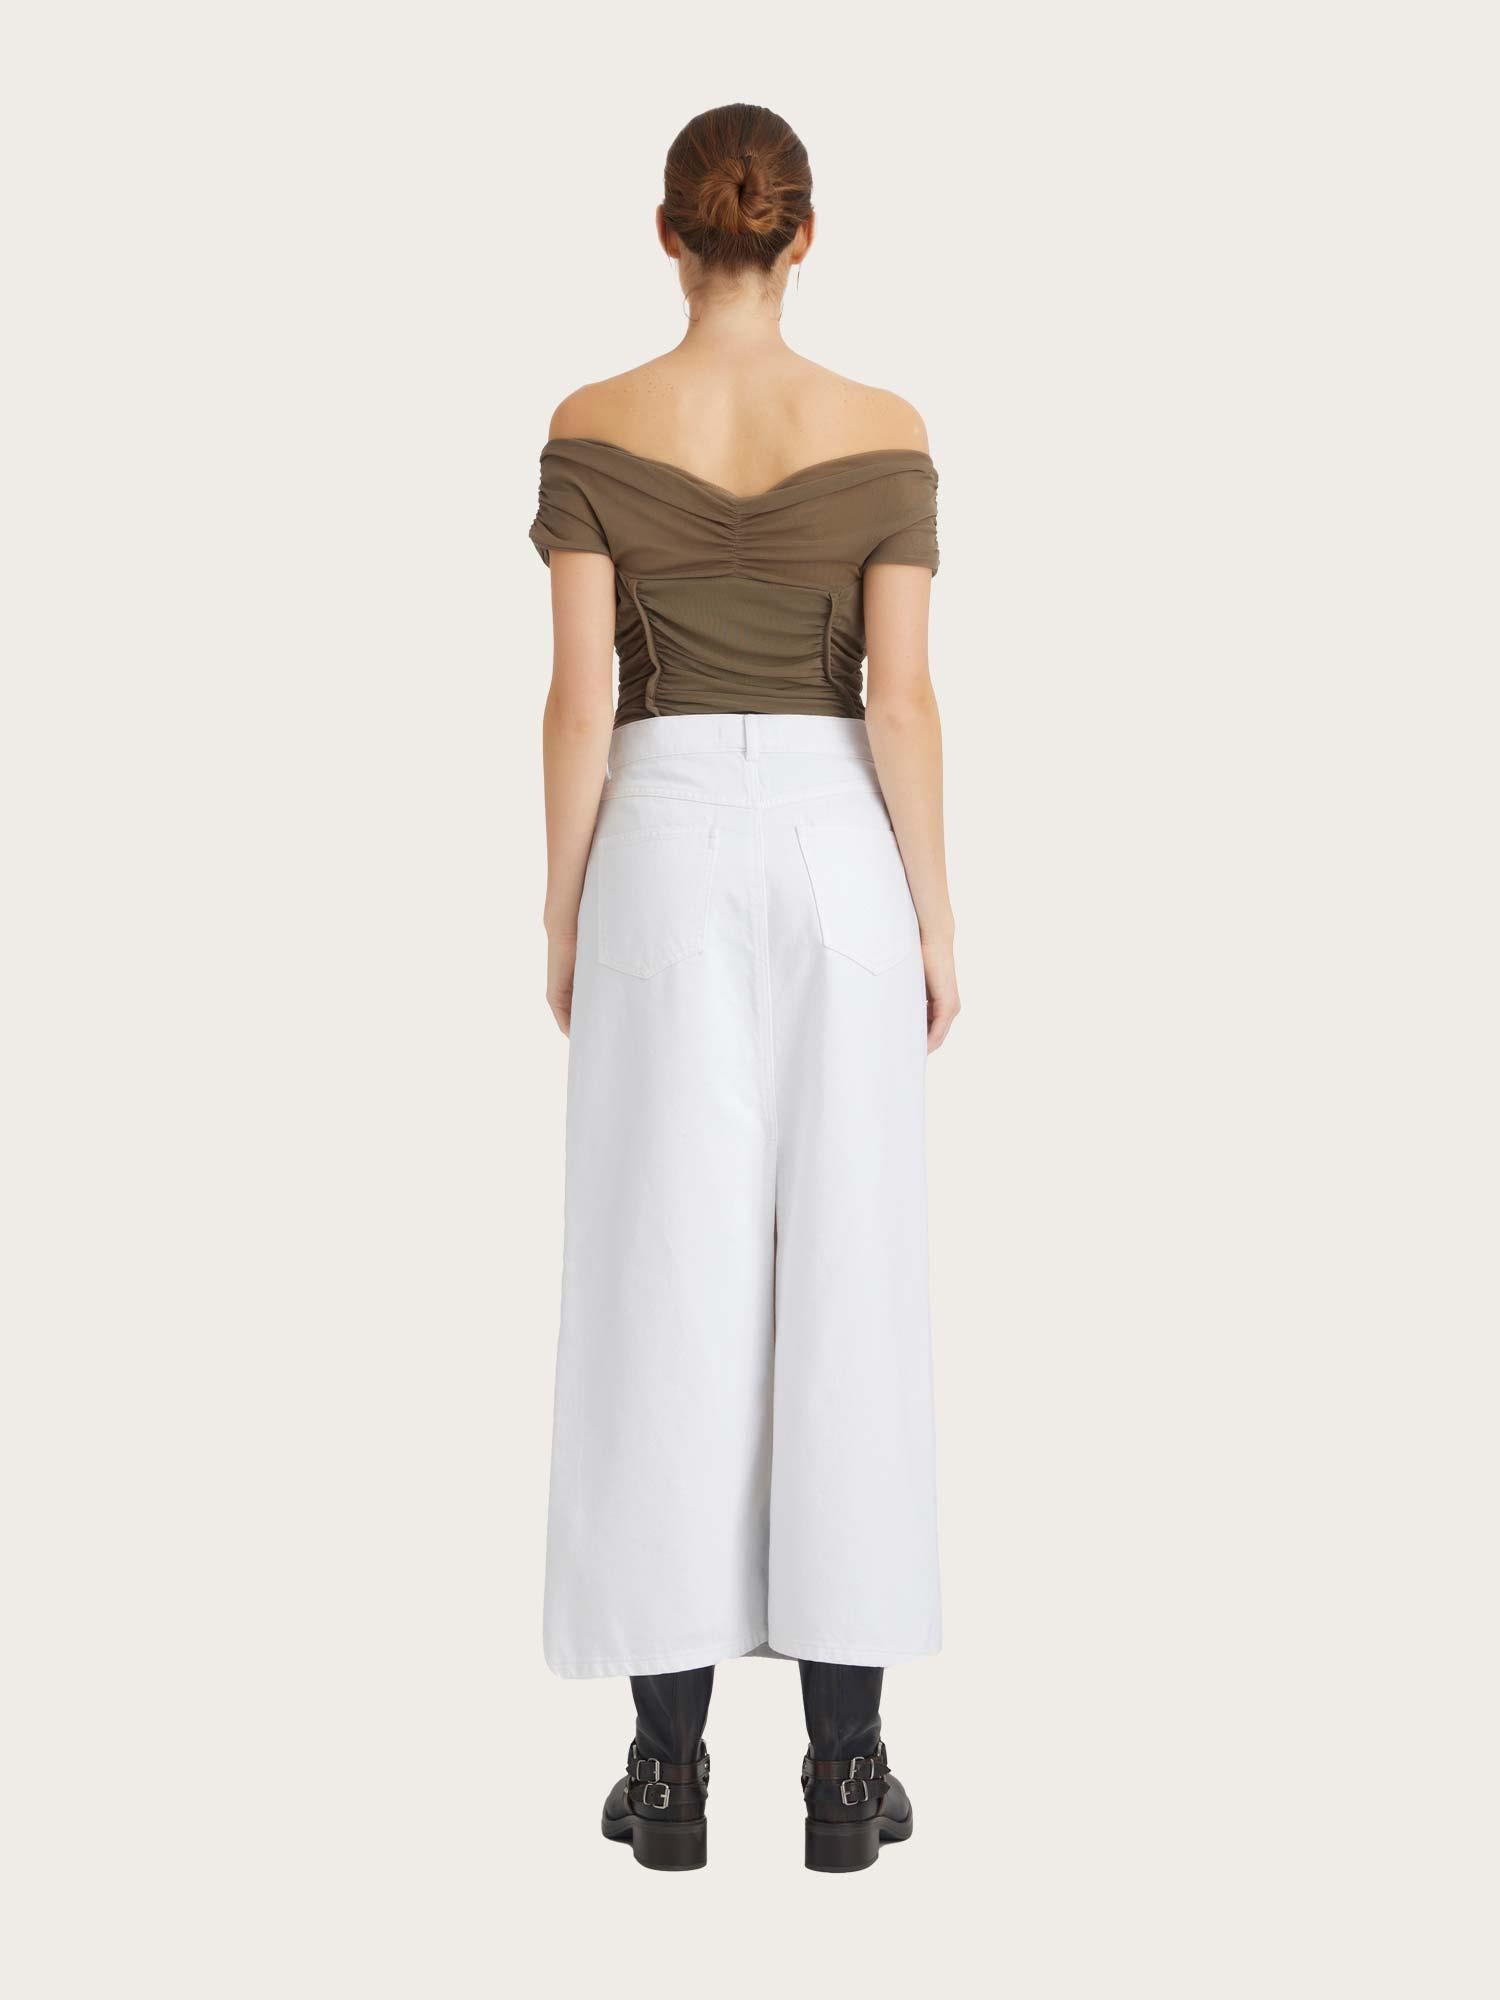 Mily hw Long Skirt - White Wash